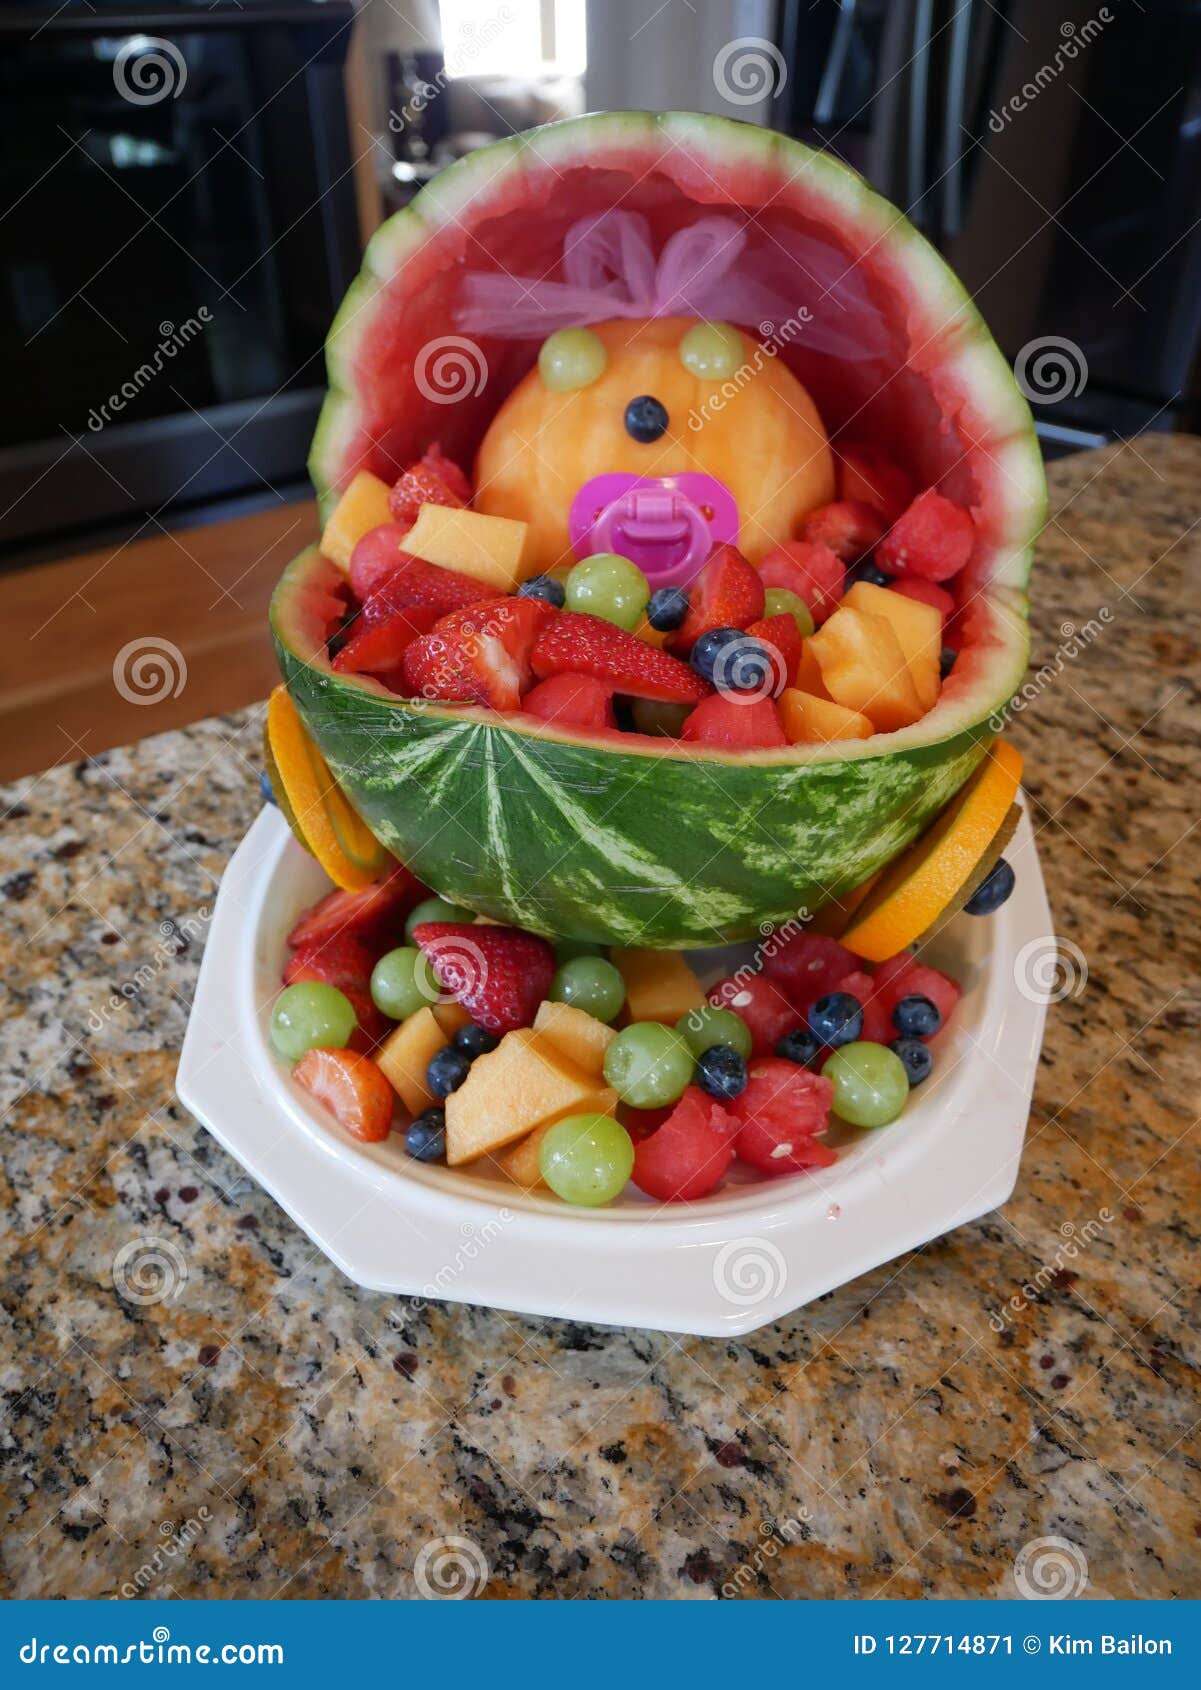 baby buggy fruit basket